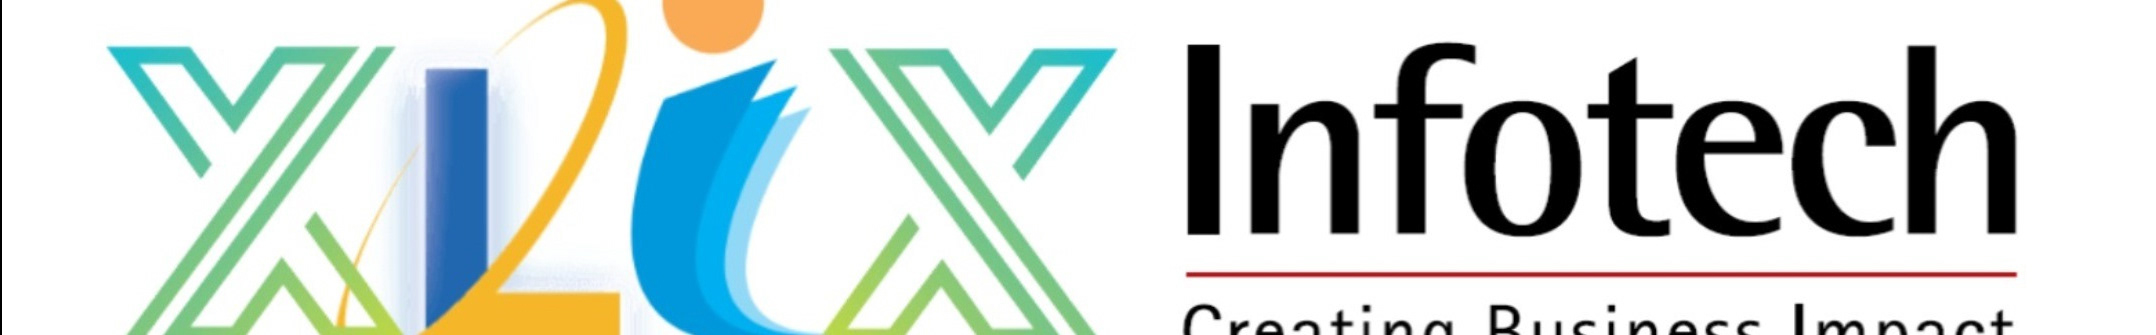 Xlix Infotech's profile banner